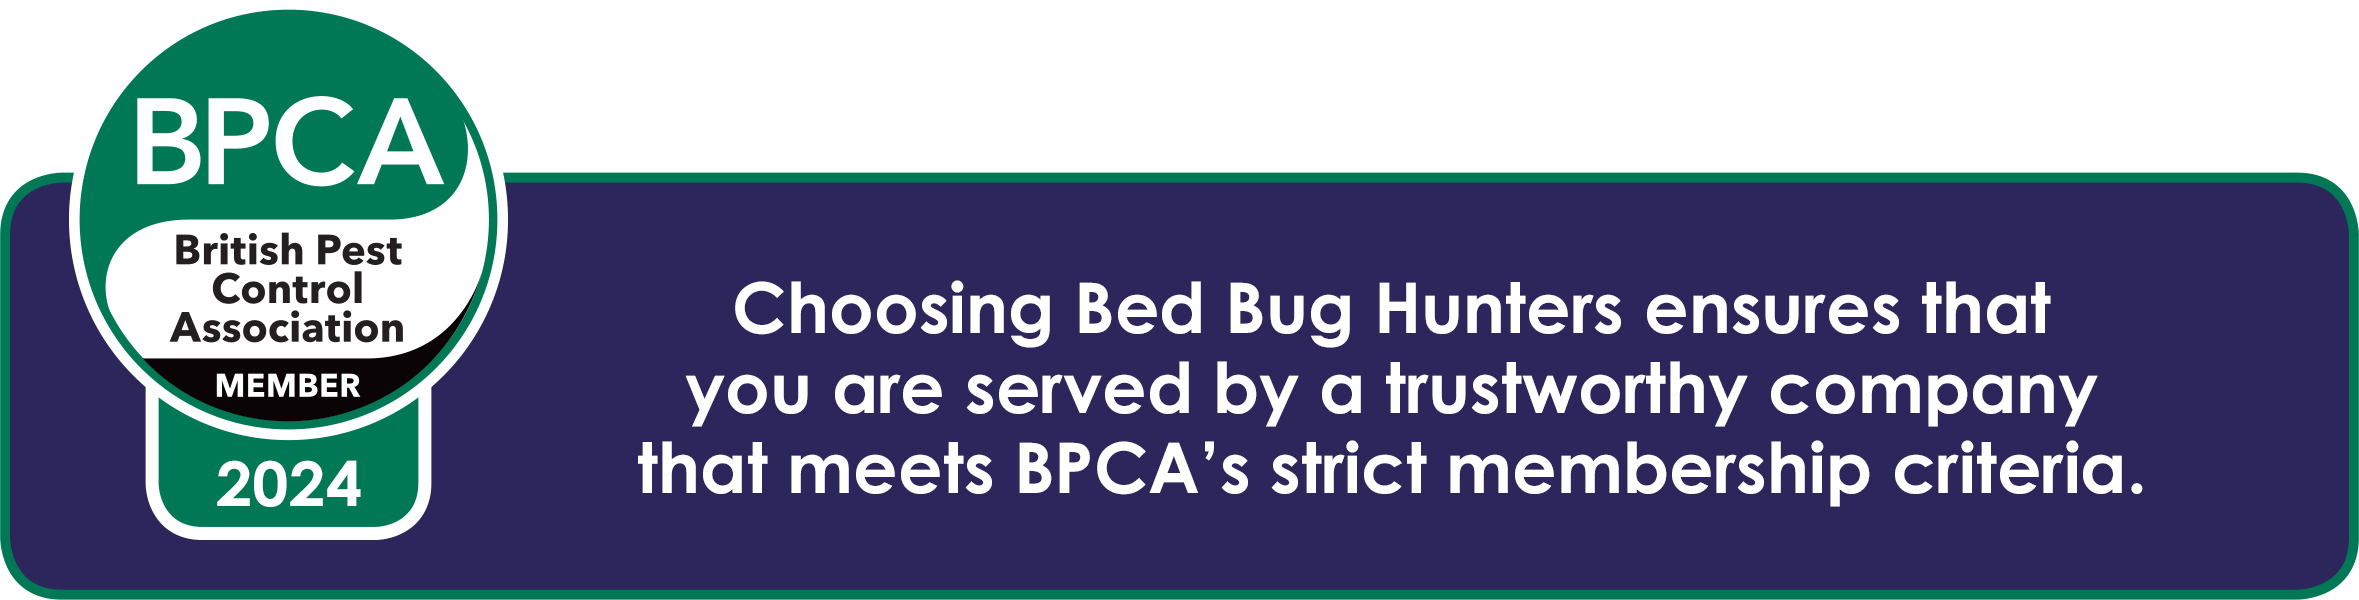 Bed Bug Hunters are full BPCA members